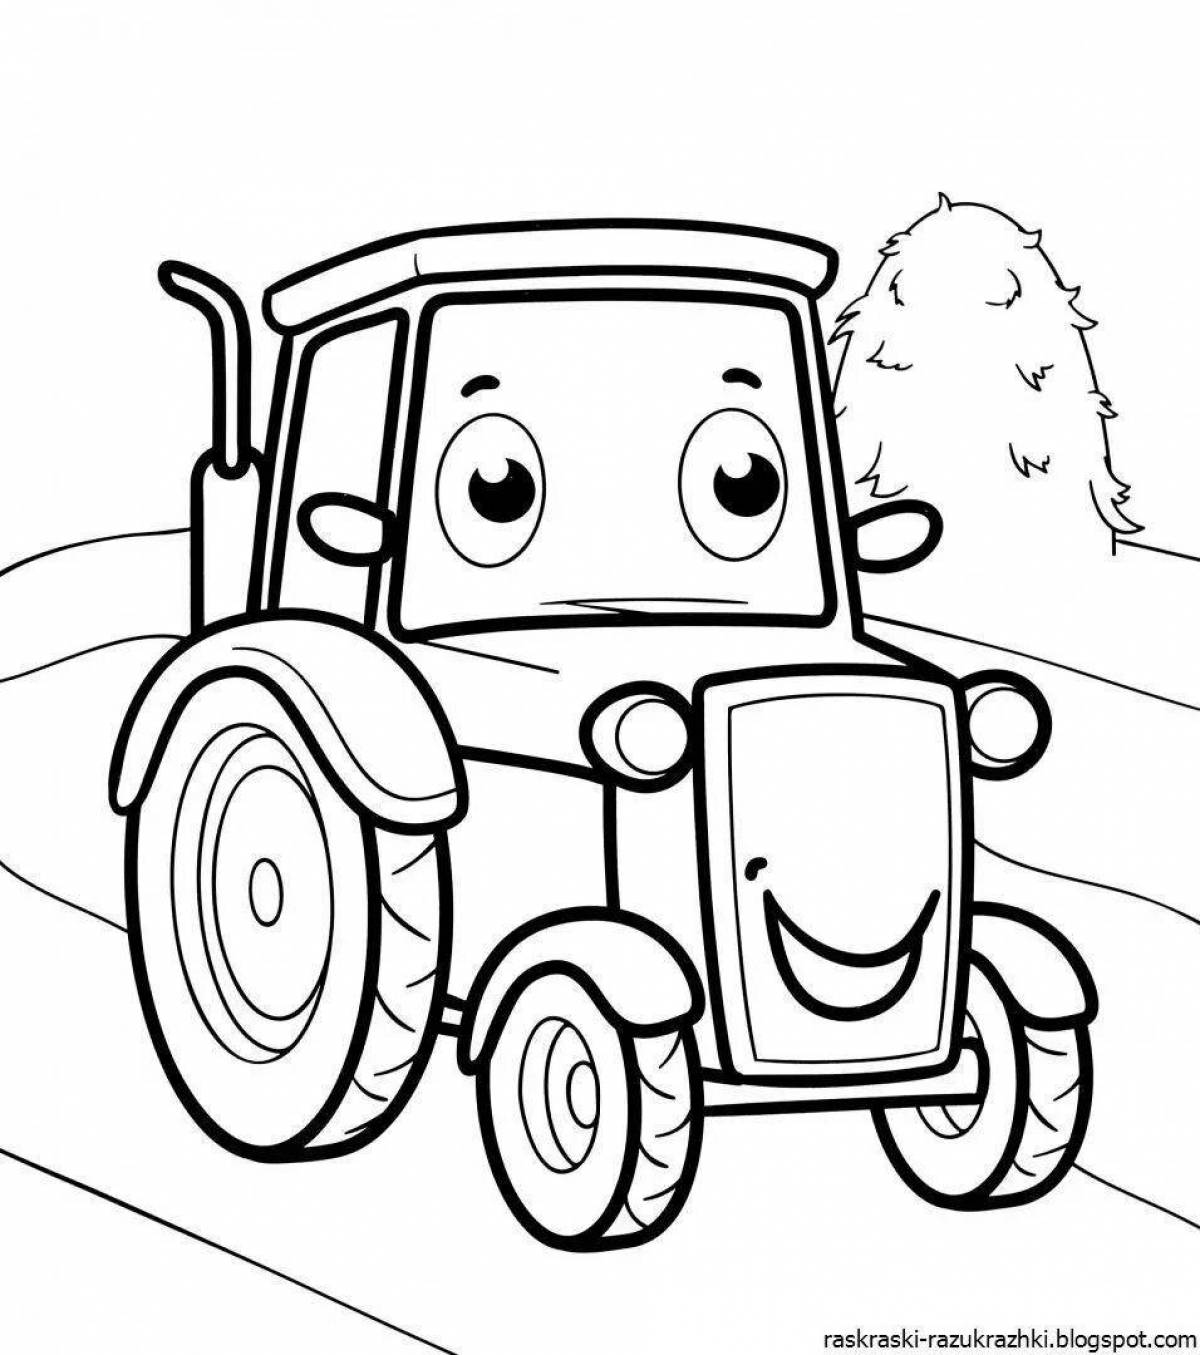 Захватывающая раскраска трактор для детей 2-3 лет